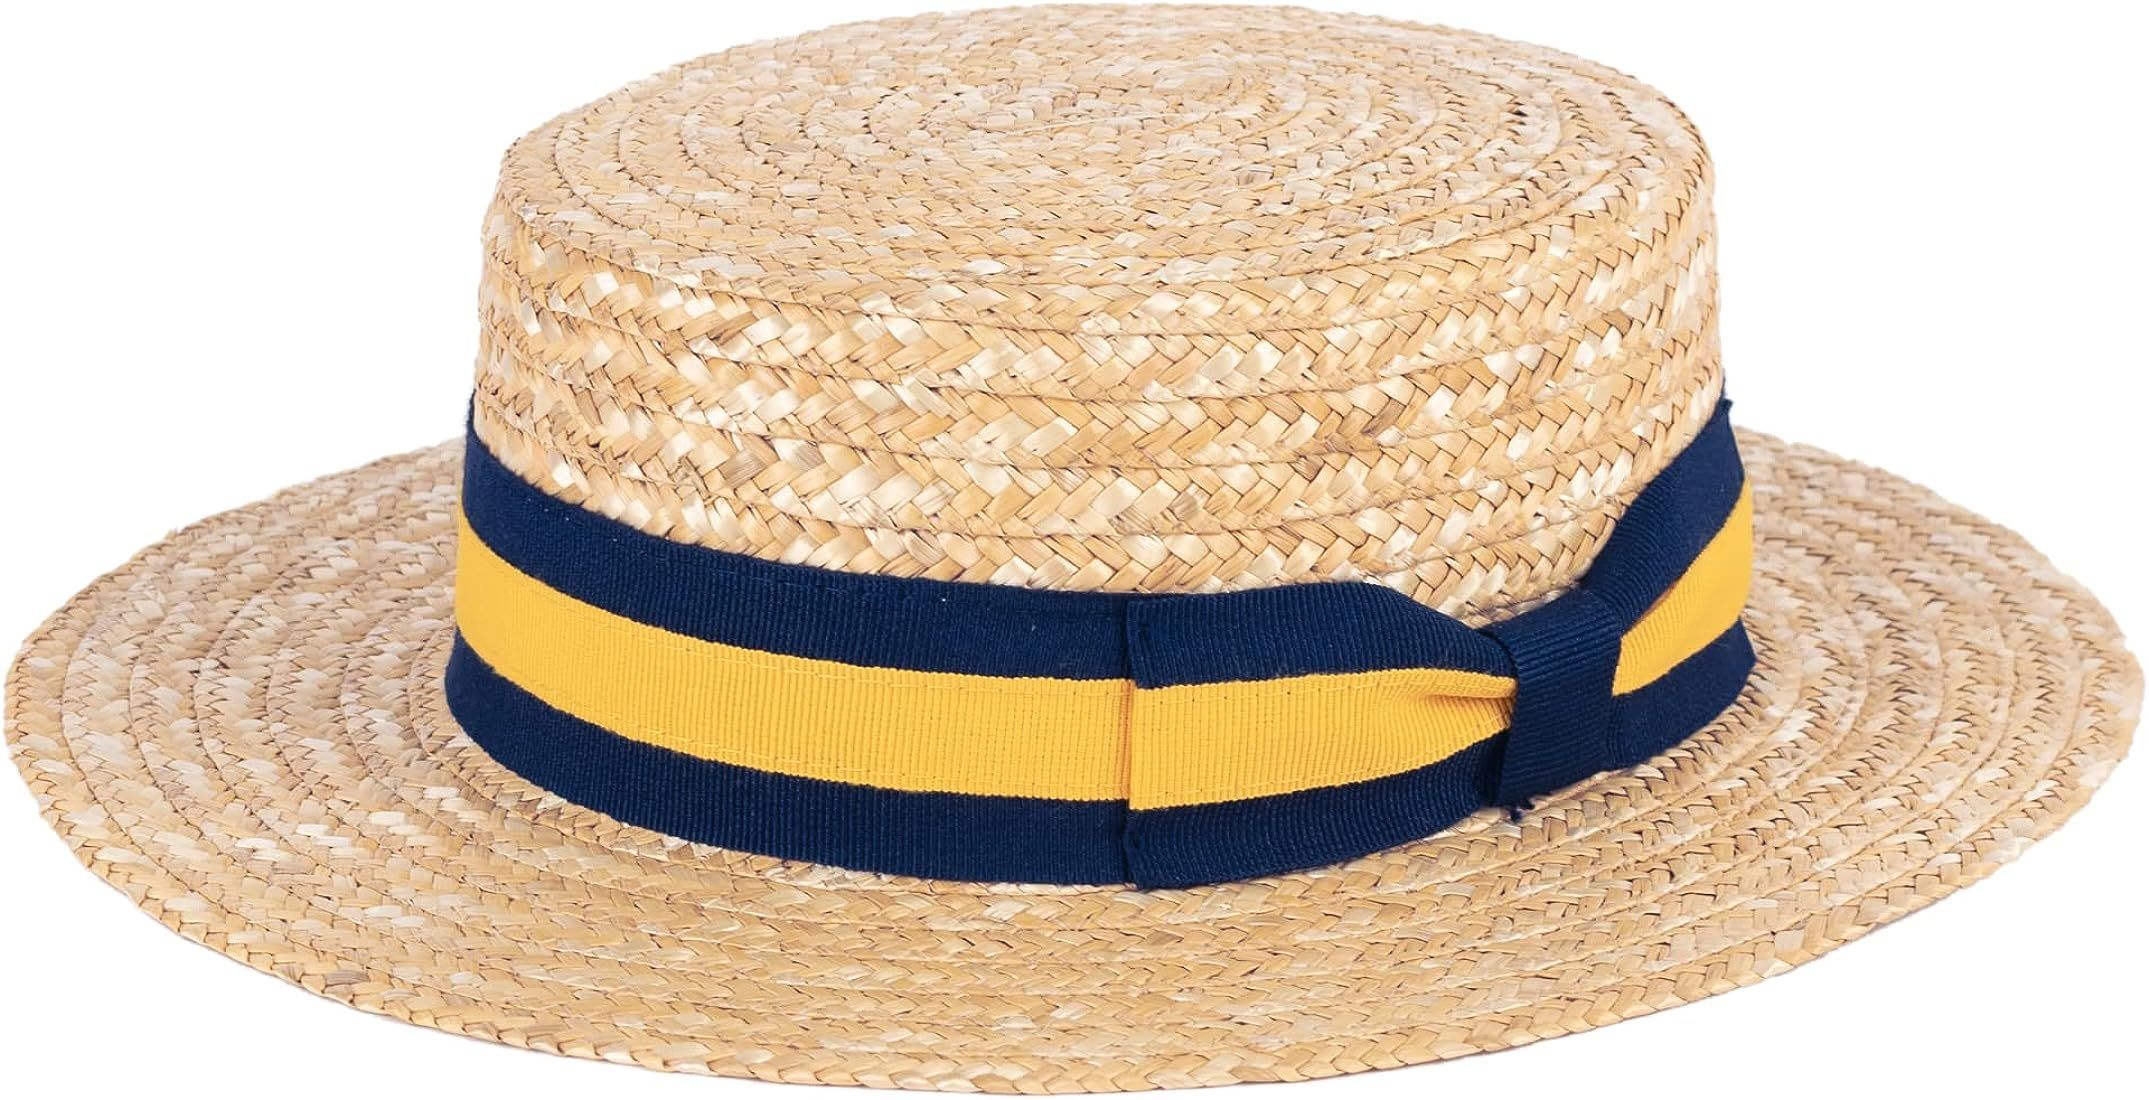 ZAKIRA Straw Boater Hat Handmade in Italy | Amazon (US)